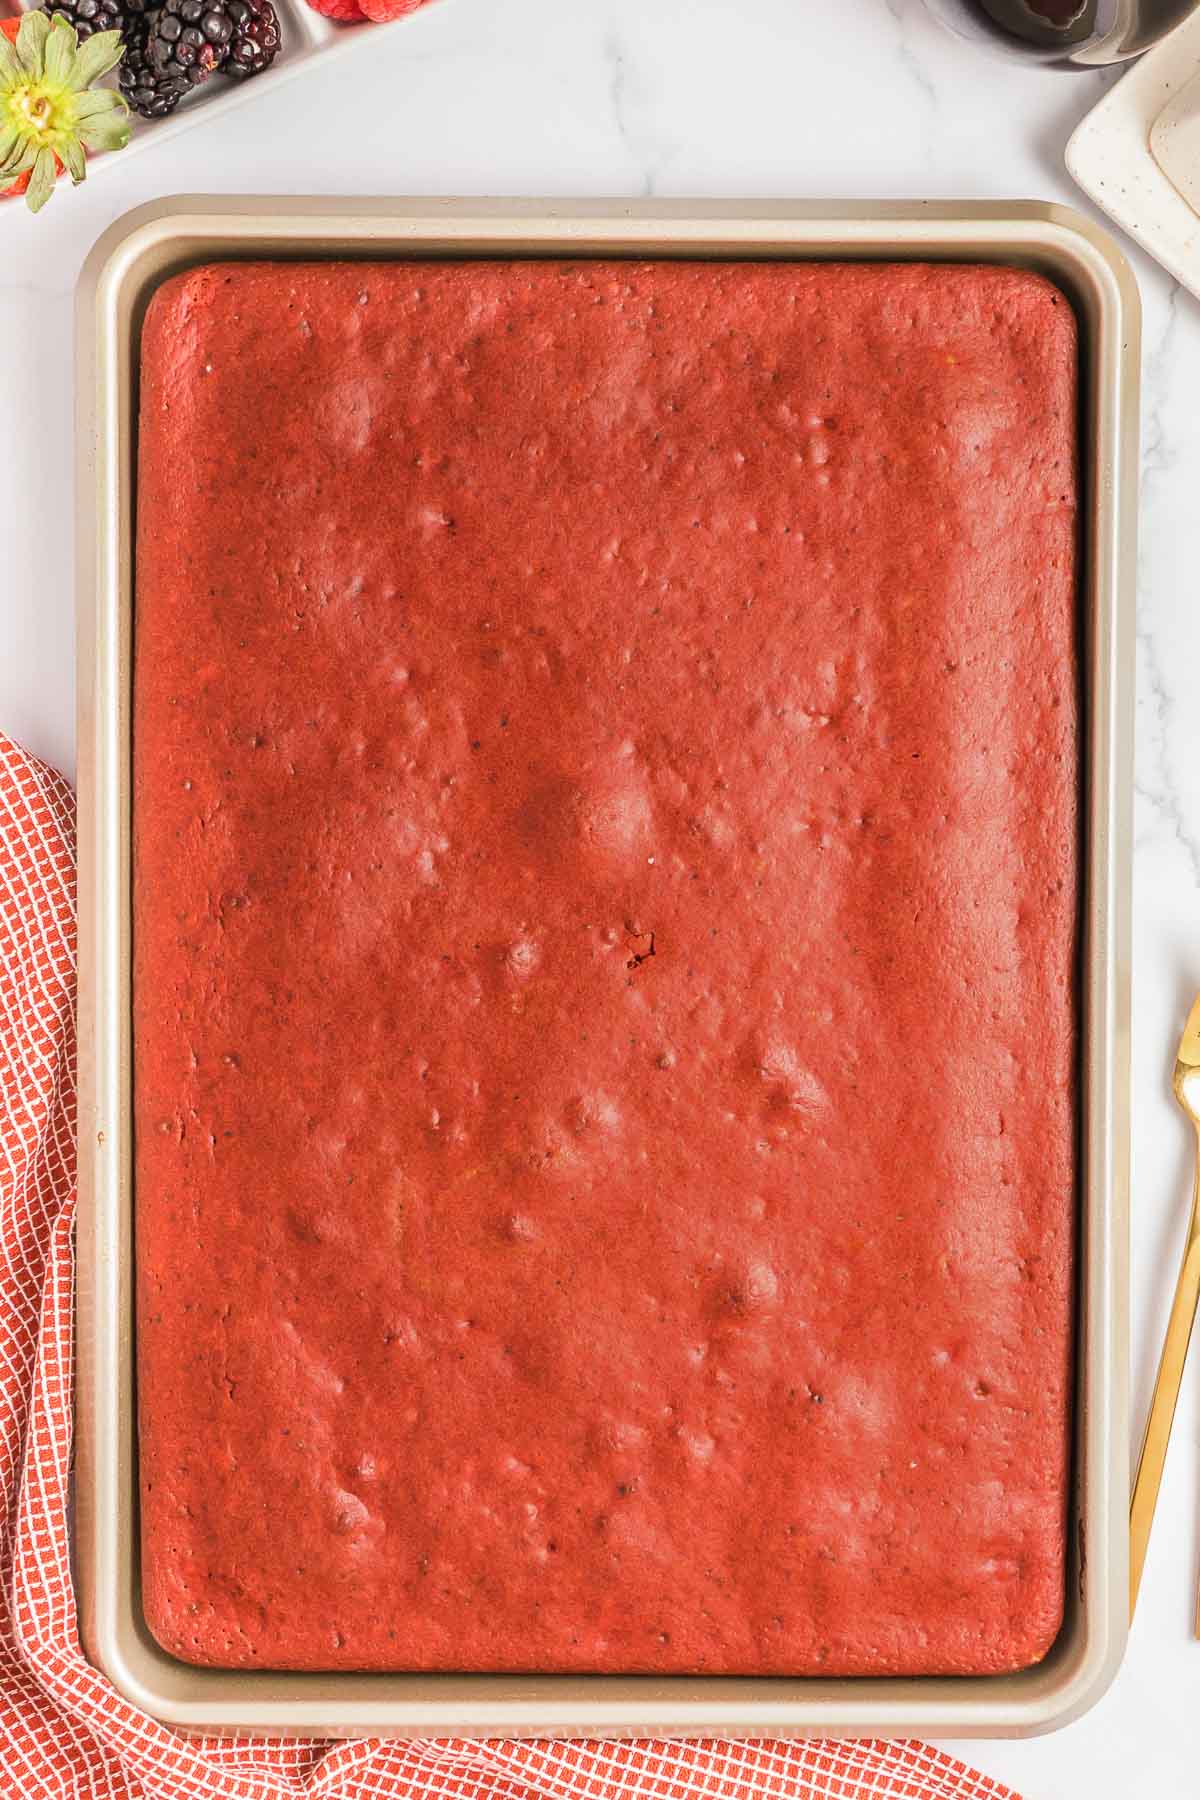 Sheet pan full of baked red velvet pancakes.